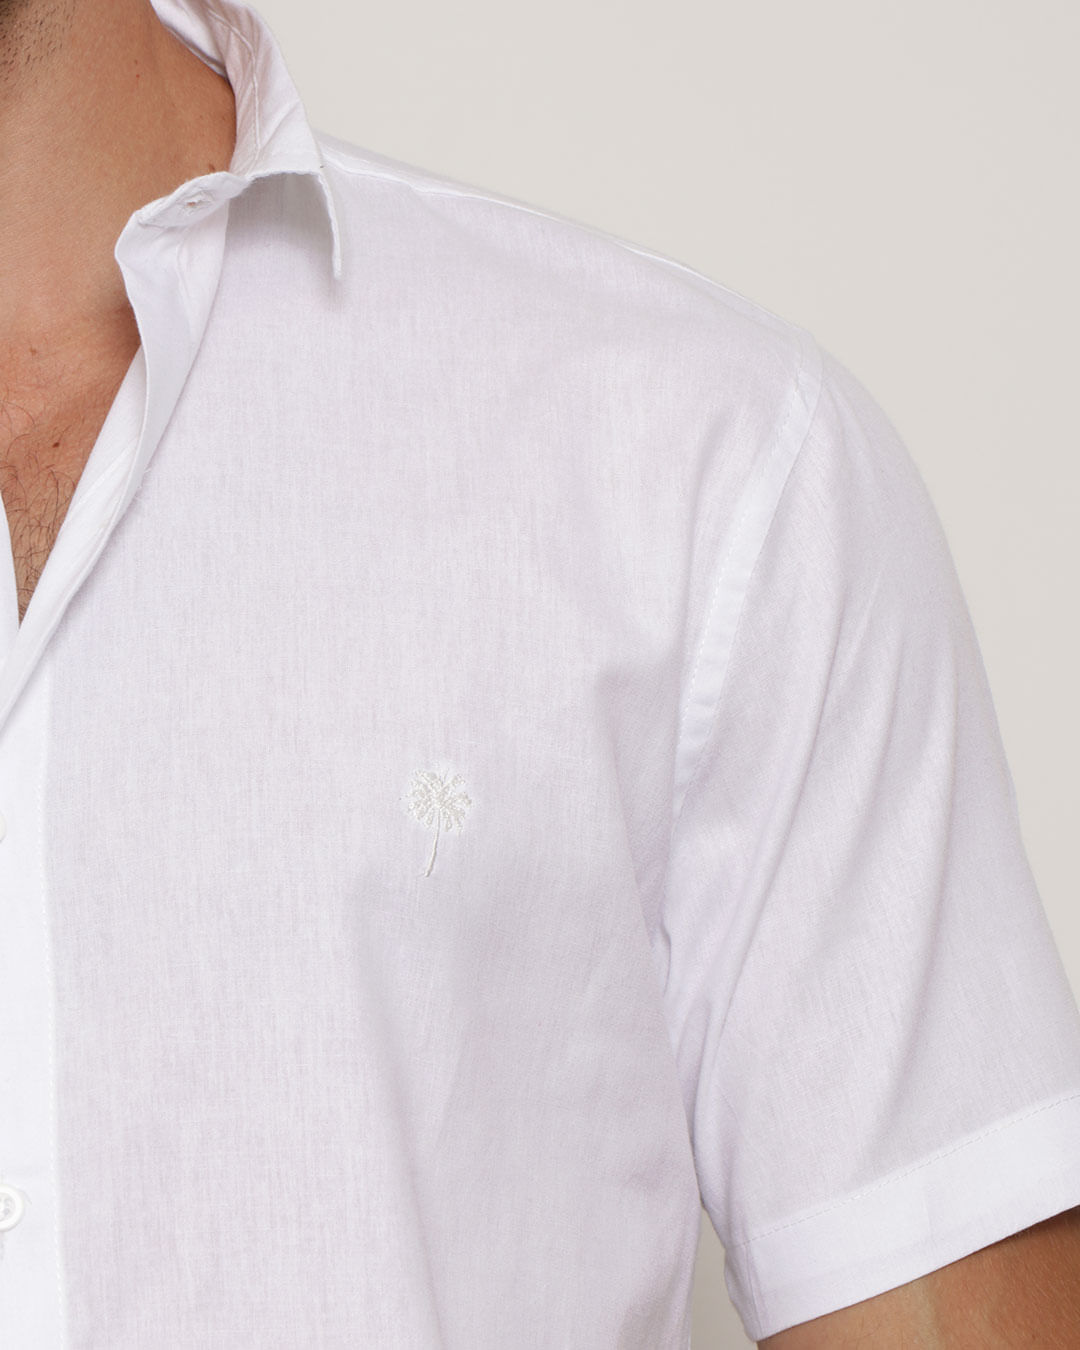 Camisa Branca Lisa - Produtos para açougue e tripa para linguiça